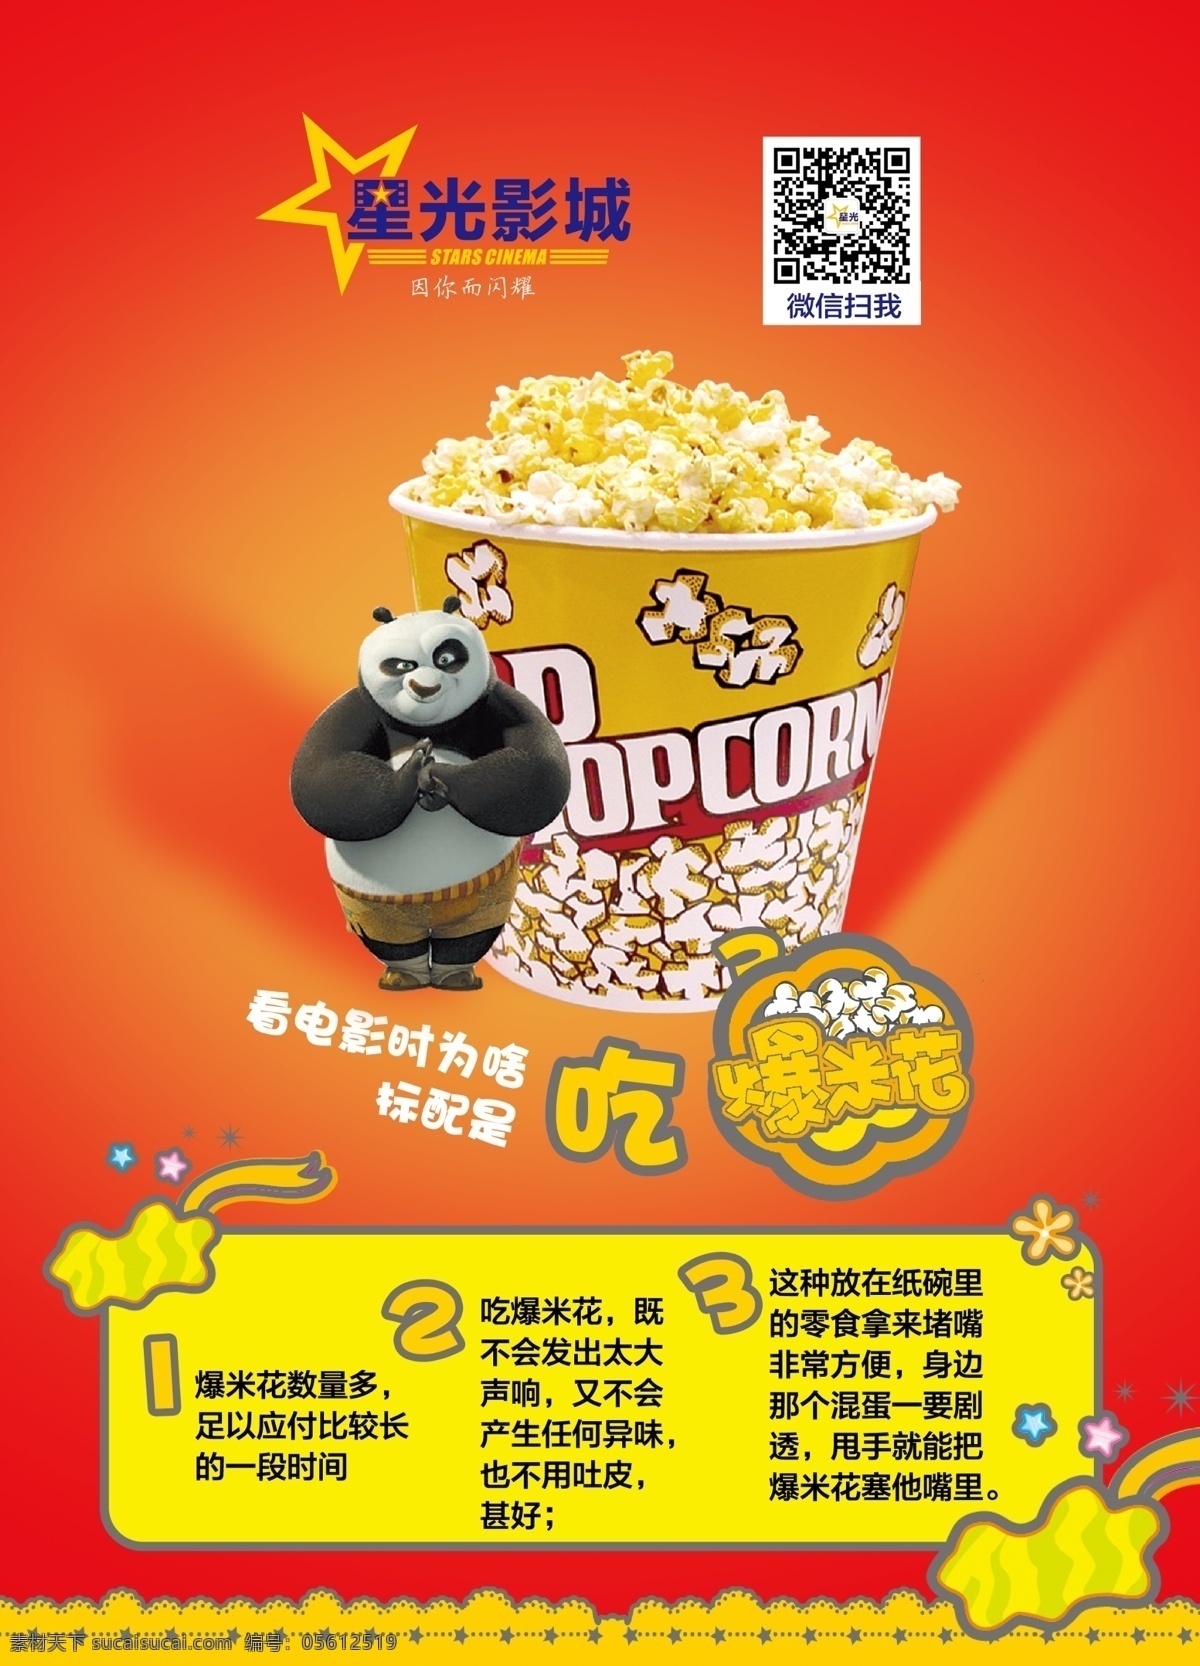 电影院 爆米花 形象 广告 形象广告 功夫熊猫 熊猫 爆米花好处 好处 活动水牌 招贴设计